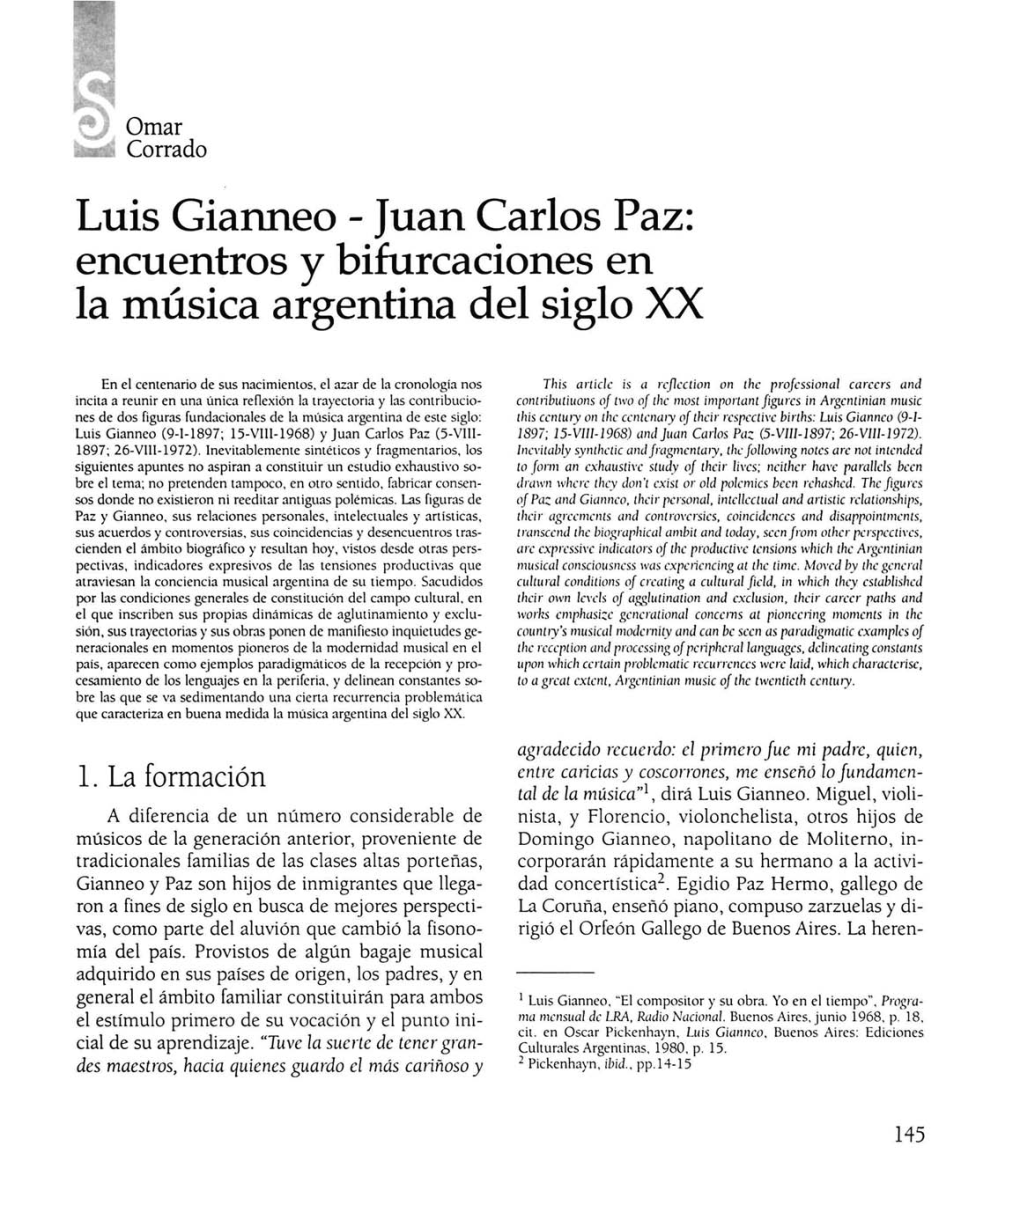 Luis Gianneo - Juan Carlos Paz: Encuentros Y Bifurcaciones En La Música Argentina Del Siglo XX